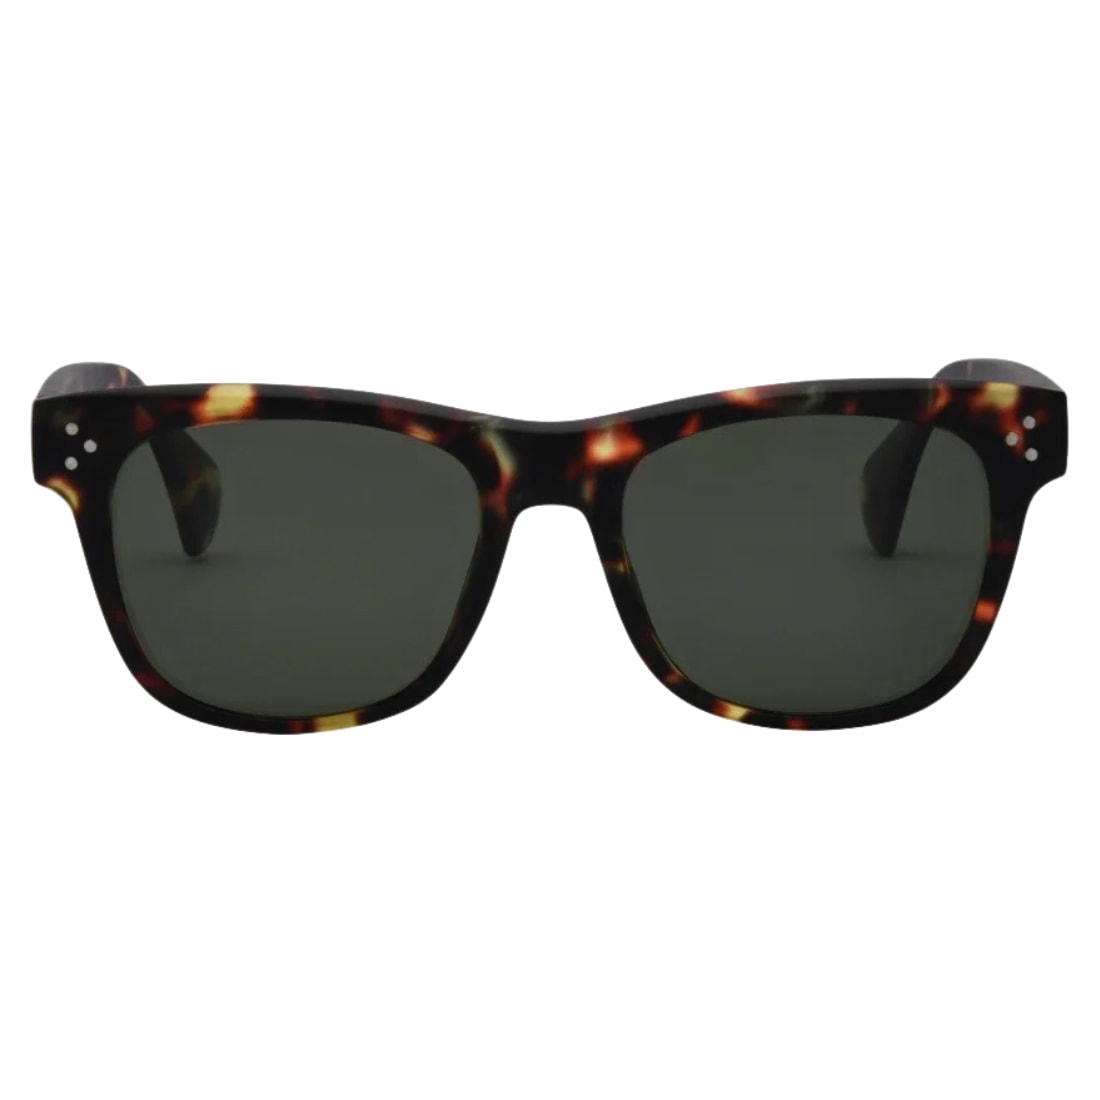 I-Sea Liam Polarised Sunglasses - Tortoise/Green Polarized Lens